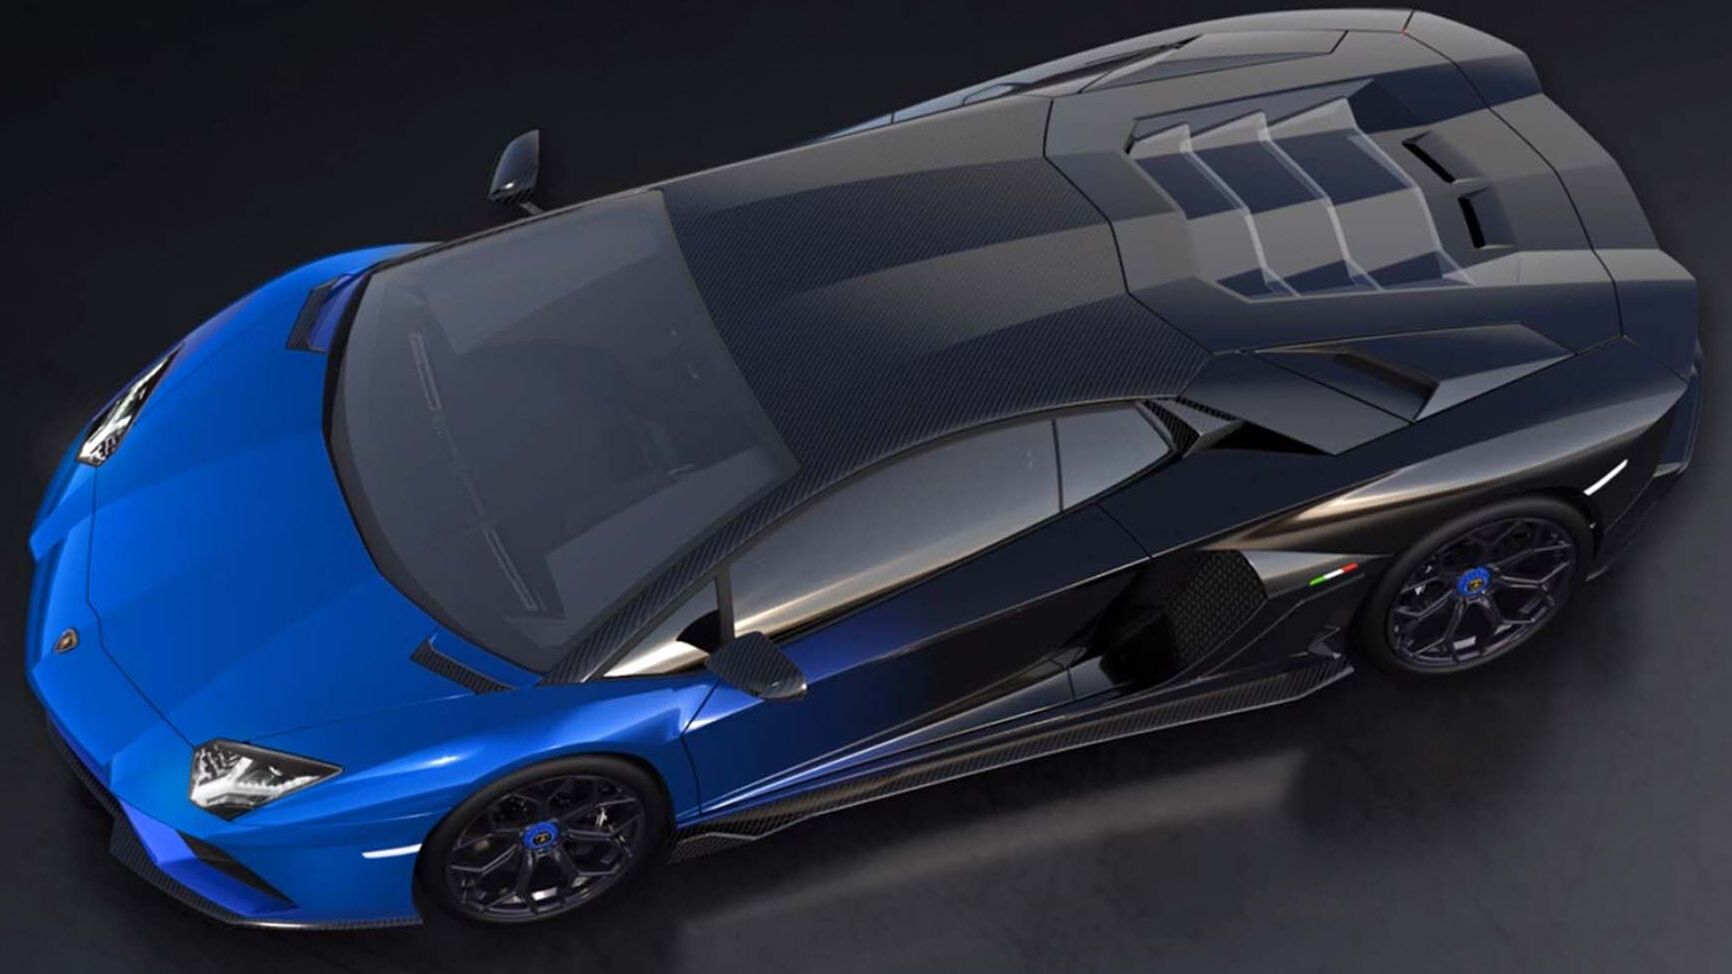 ექსკლუზიური Lamborghini Aventador LP 780-4 Ultimae Coupé აუქციონზე NFT 1.1-თან და უფრო მაღალი იქნება